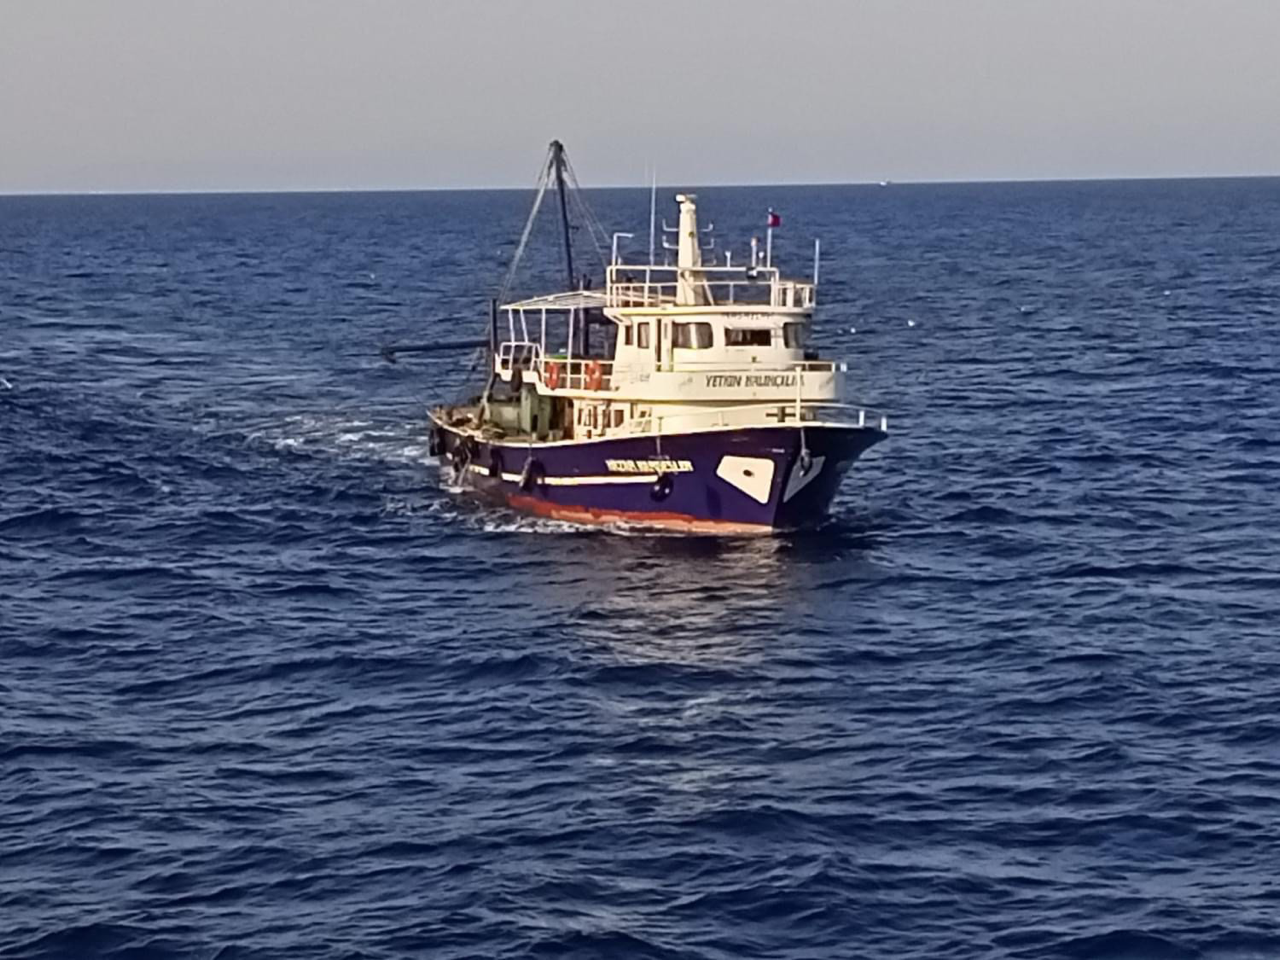 Τουρκικό αλιευτικό σε χωρικά ύδατα αλλά εμείς τραγουδάμε «Καπετάν Ανδρέα Ζέππο χαίρομαι όταν σε βλέπω»